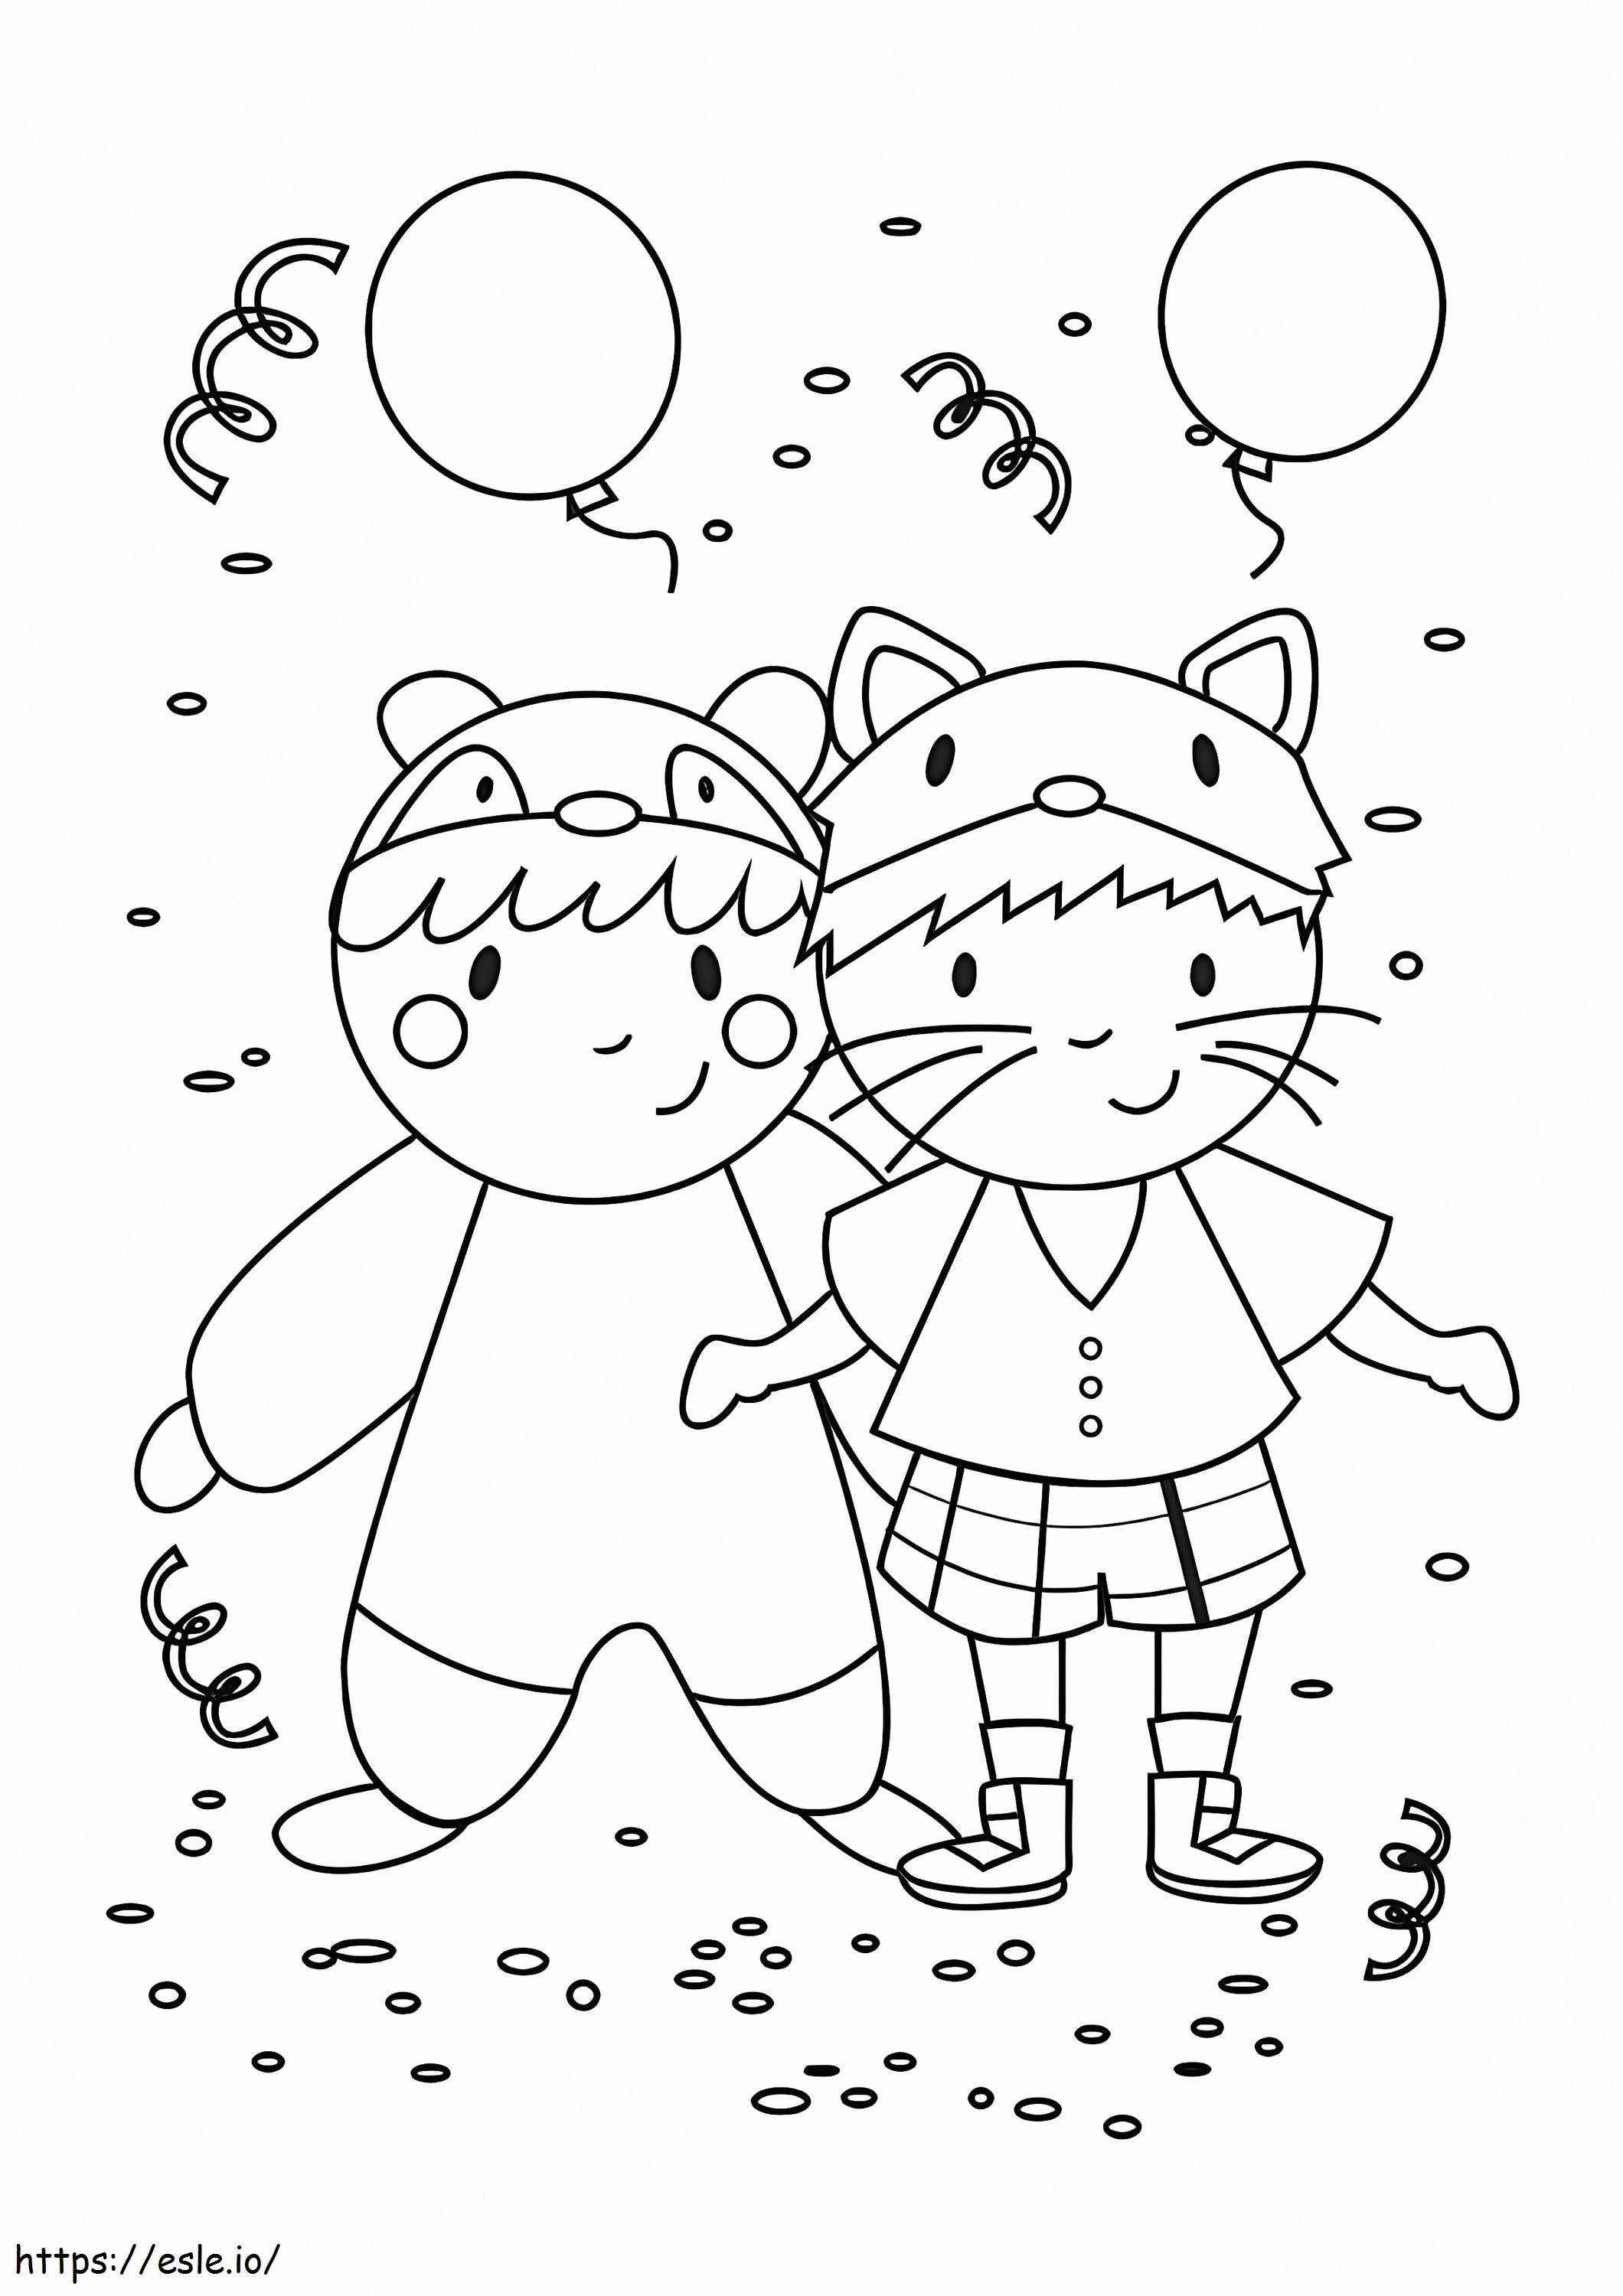 Medve és Macska karneváli jelmezek kifestő